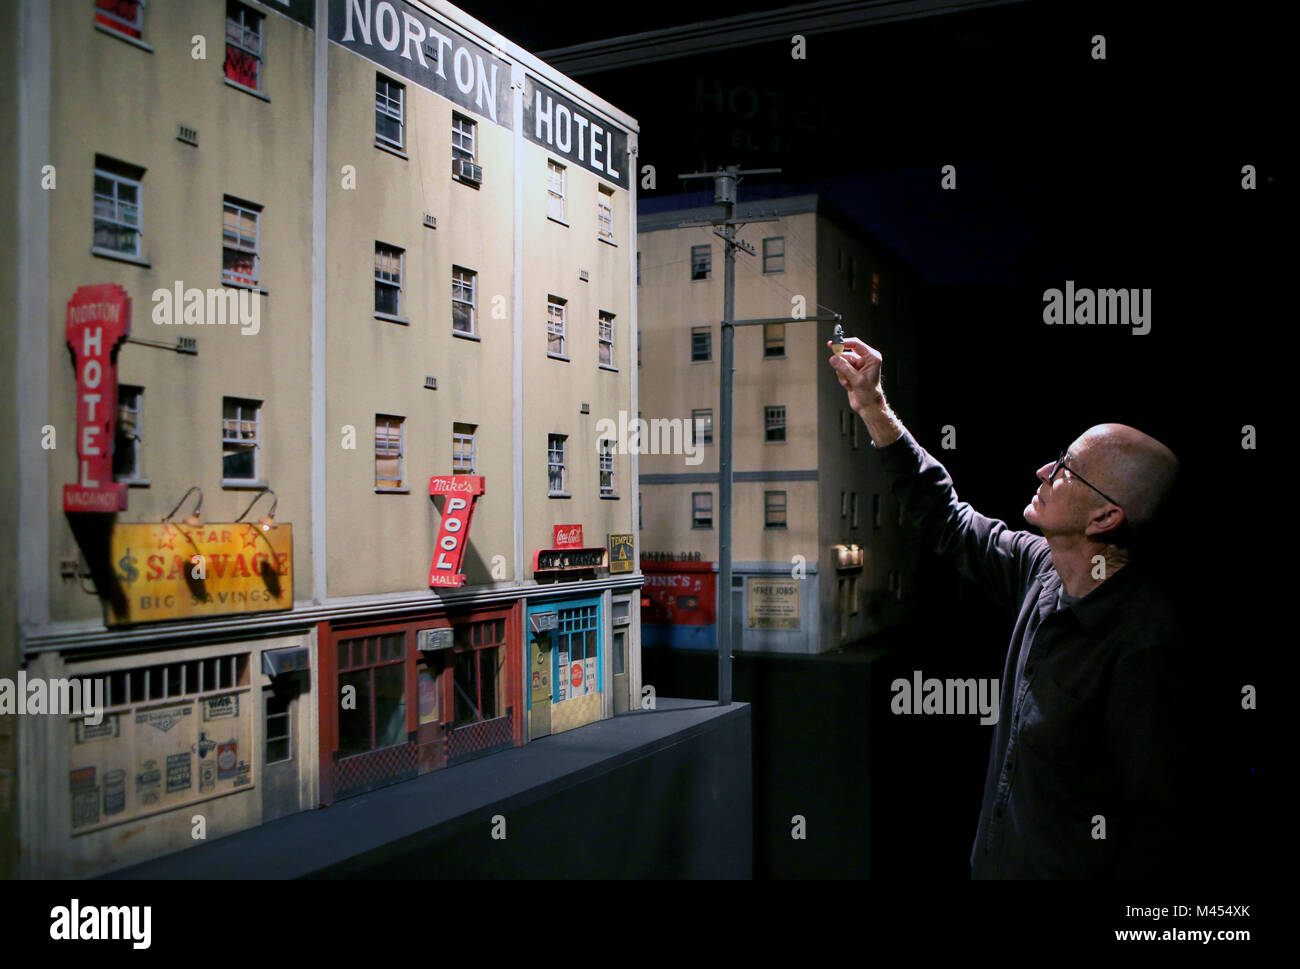 Cailfornian-basato artista Michael C McMillen con il suo modello hyperreal di un immaginato rundown zona di Los Angeles che è sul display durante un'anteprima per la nuova Galleria di Arte Moderna esposizione interna della città di Glasgow. Foto Stock